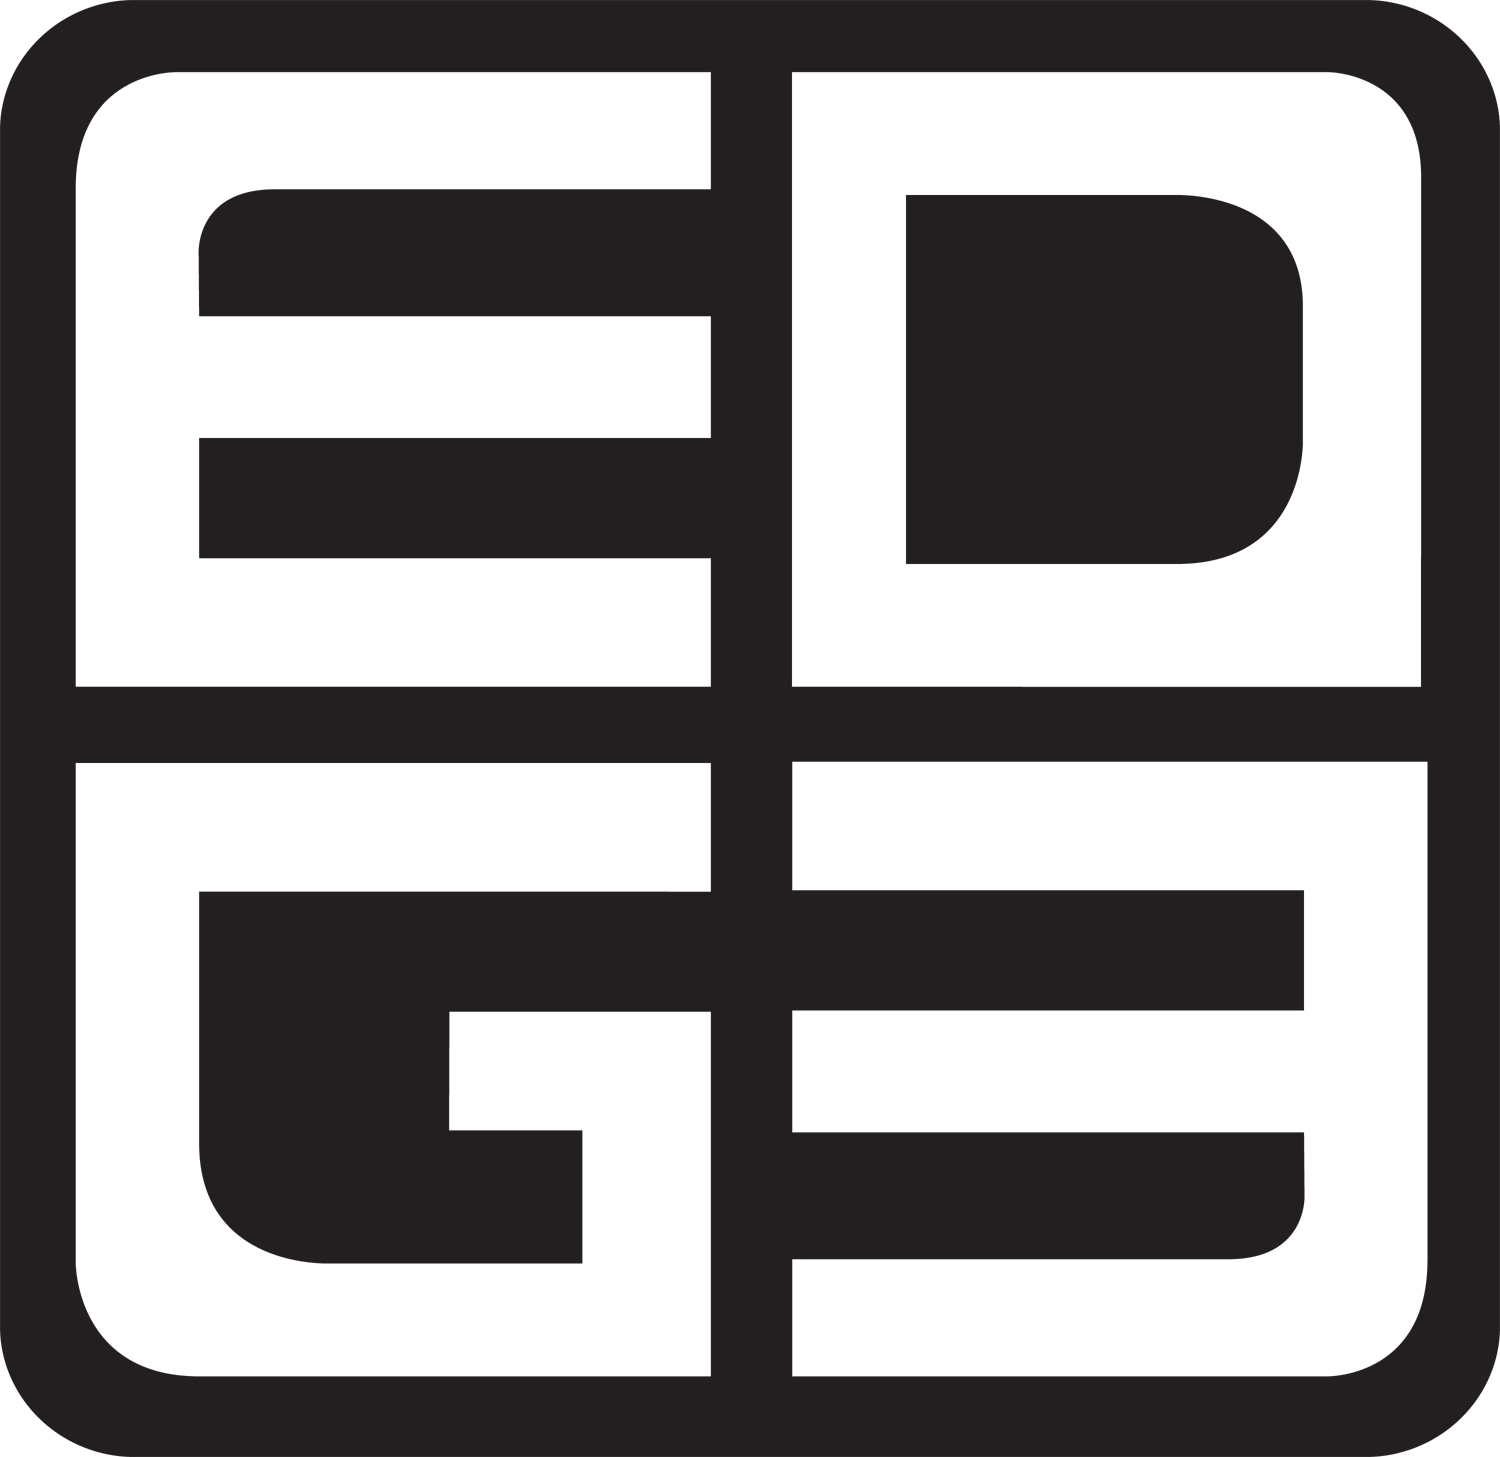 EDGE design build LLC